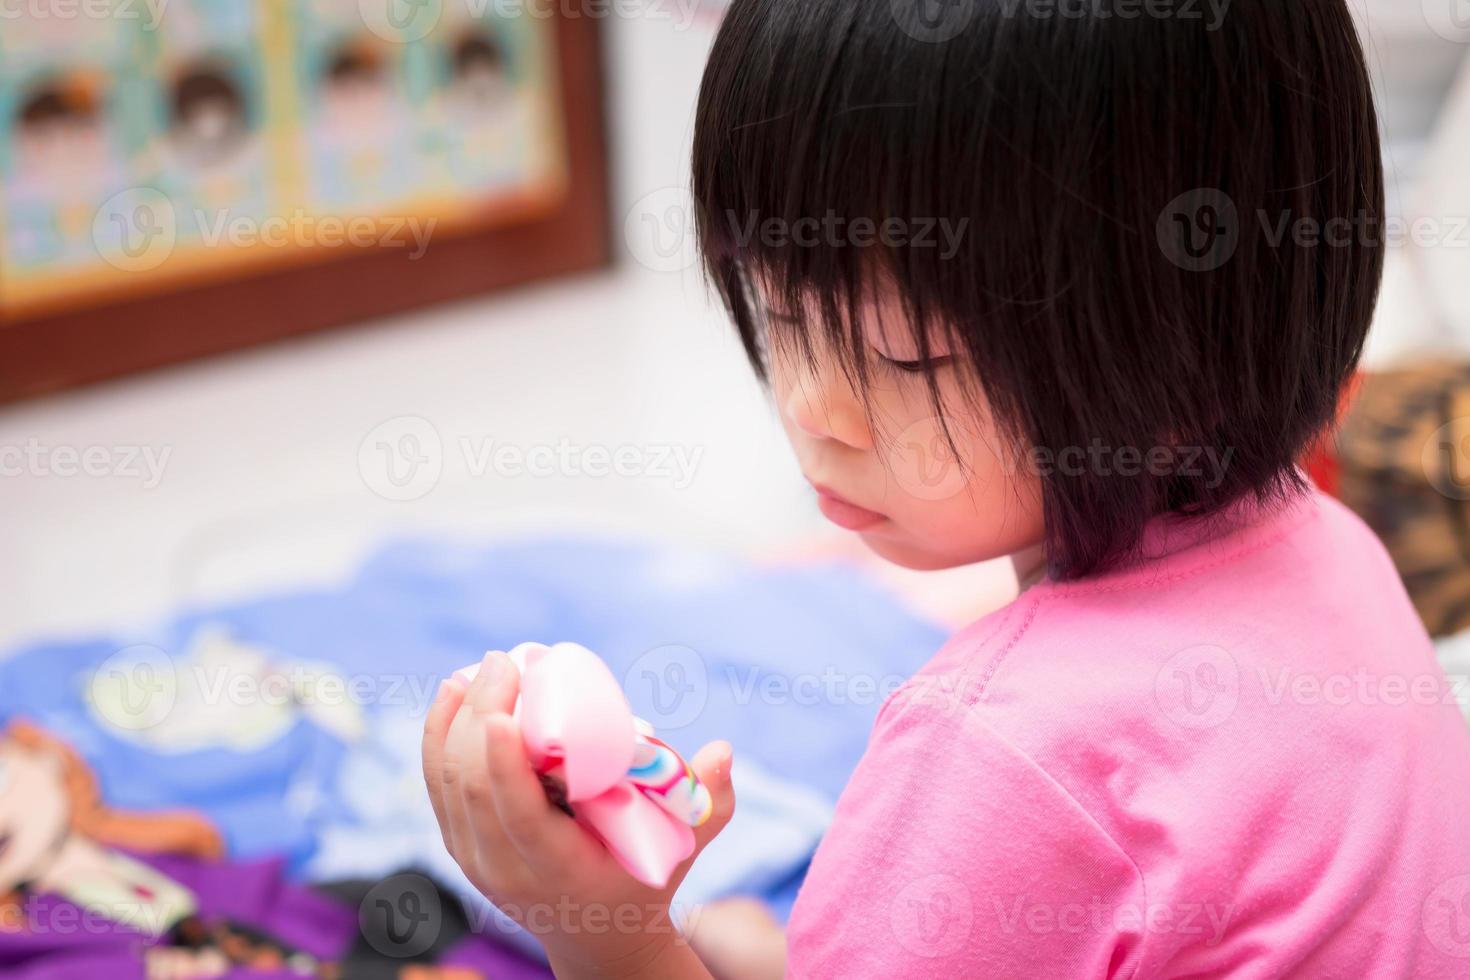 criança asiática fez uma cara triste, olhando para o grampo de cabelo danificado em sua mão. uma menina de 4 anos vestindo uma camisa rosa. foto